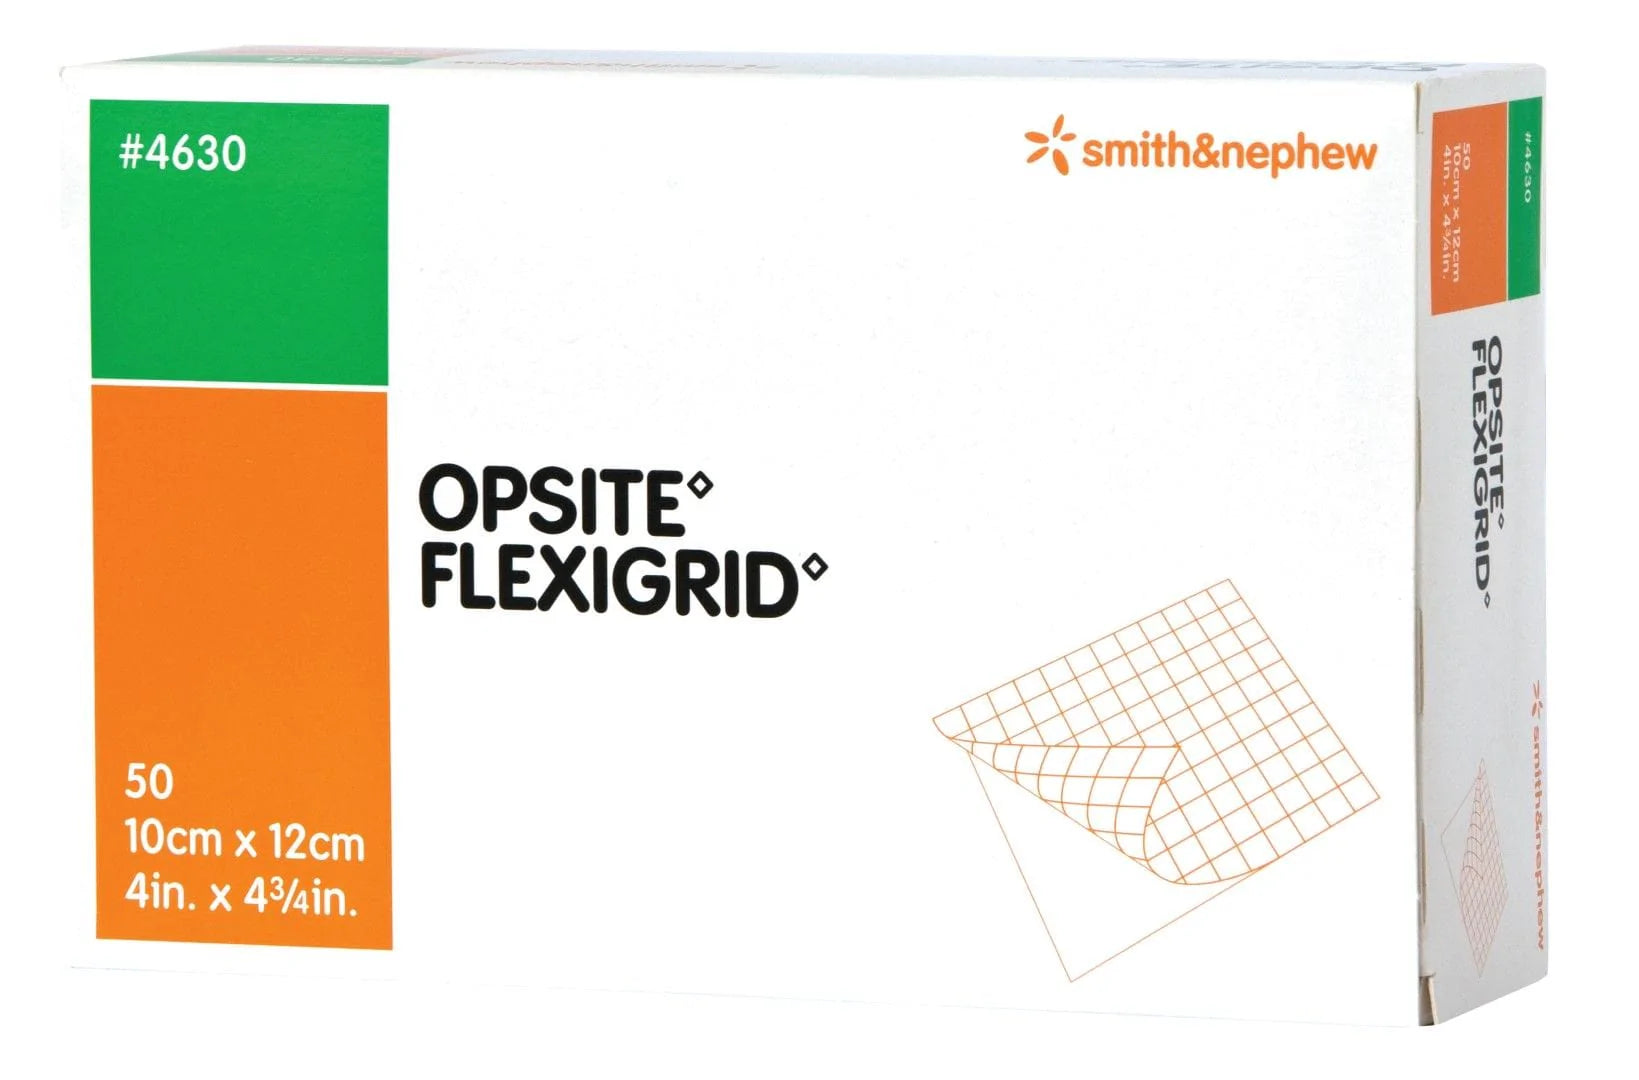 Smith & Nephew Box of 50 Opsite Flexigrid 10cm x 12cm SMN4630__BX